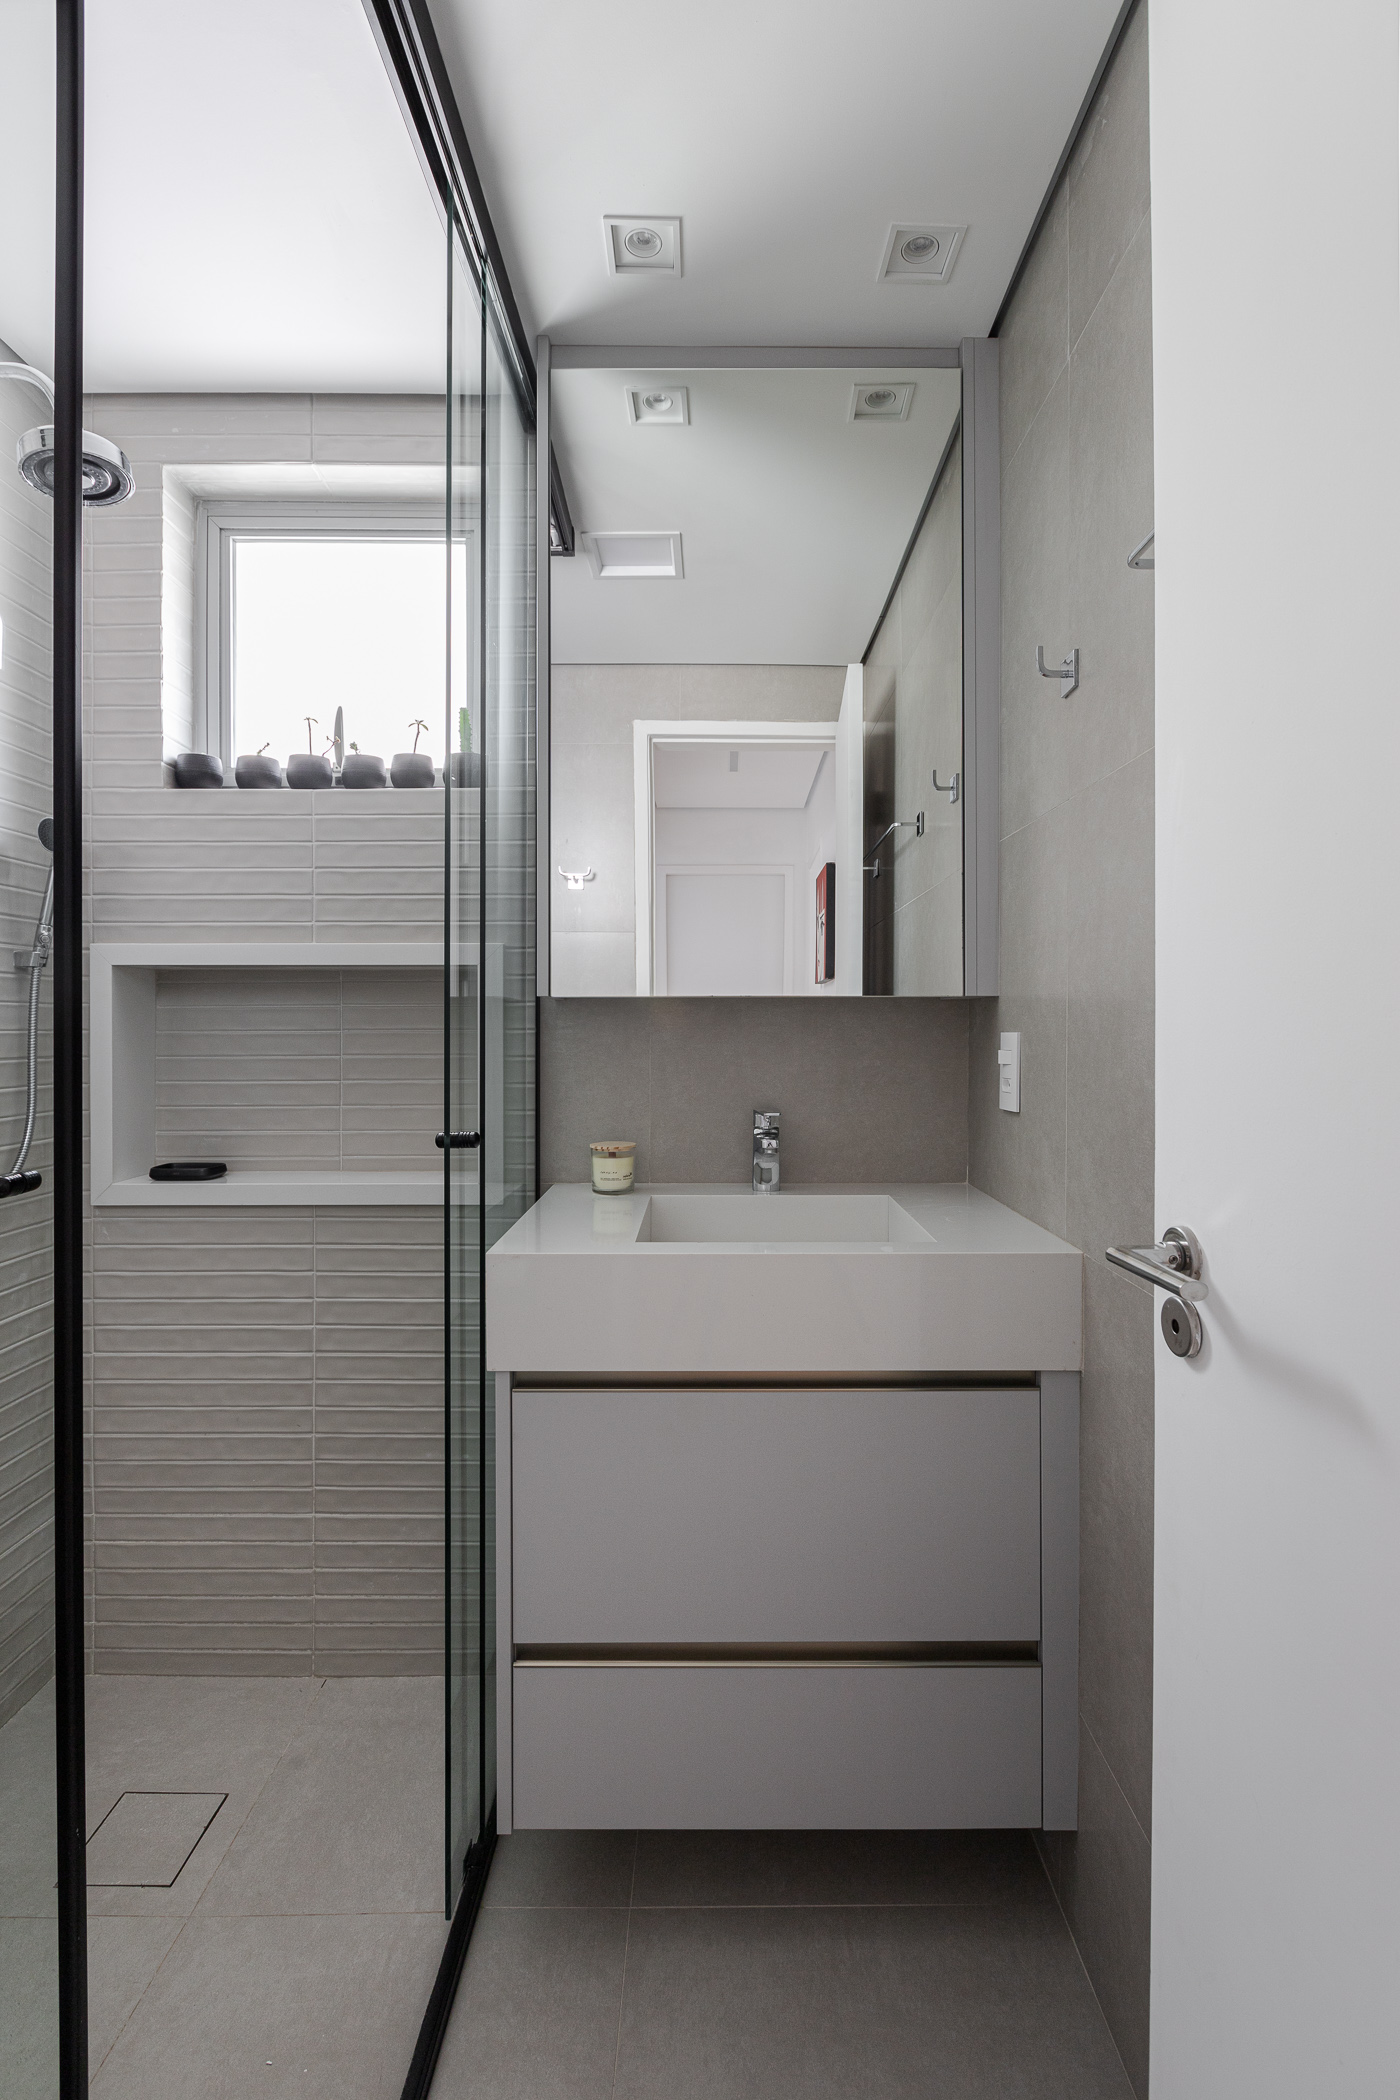 Cozinha inox marcenaria verde apartamento 95 m2 Inovando Arquitetura decoração banheiro box espelho cinza